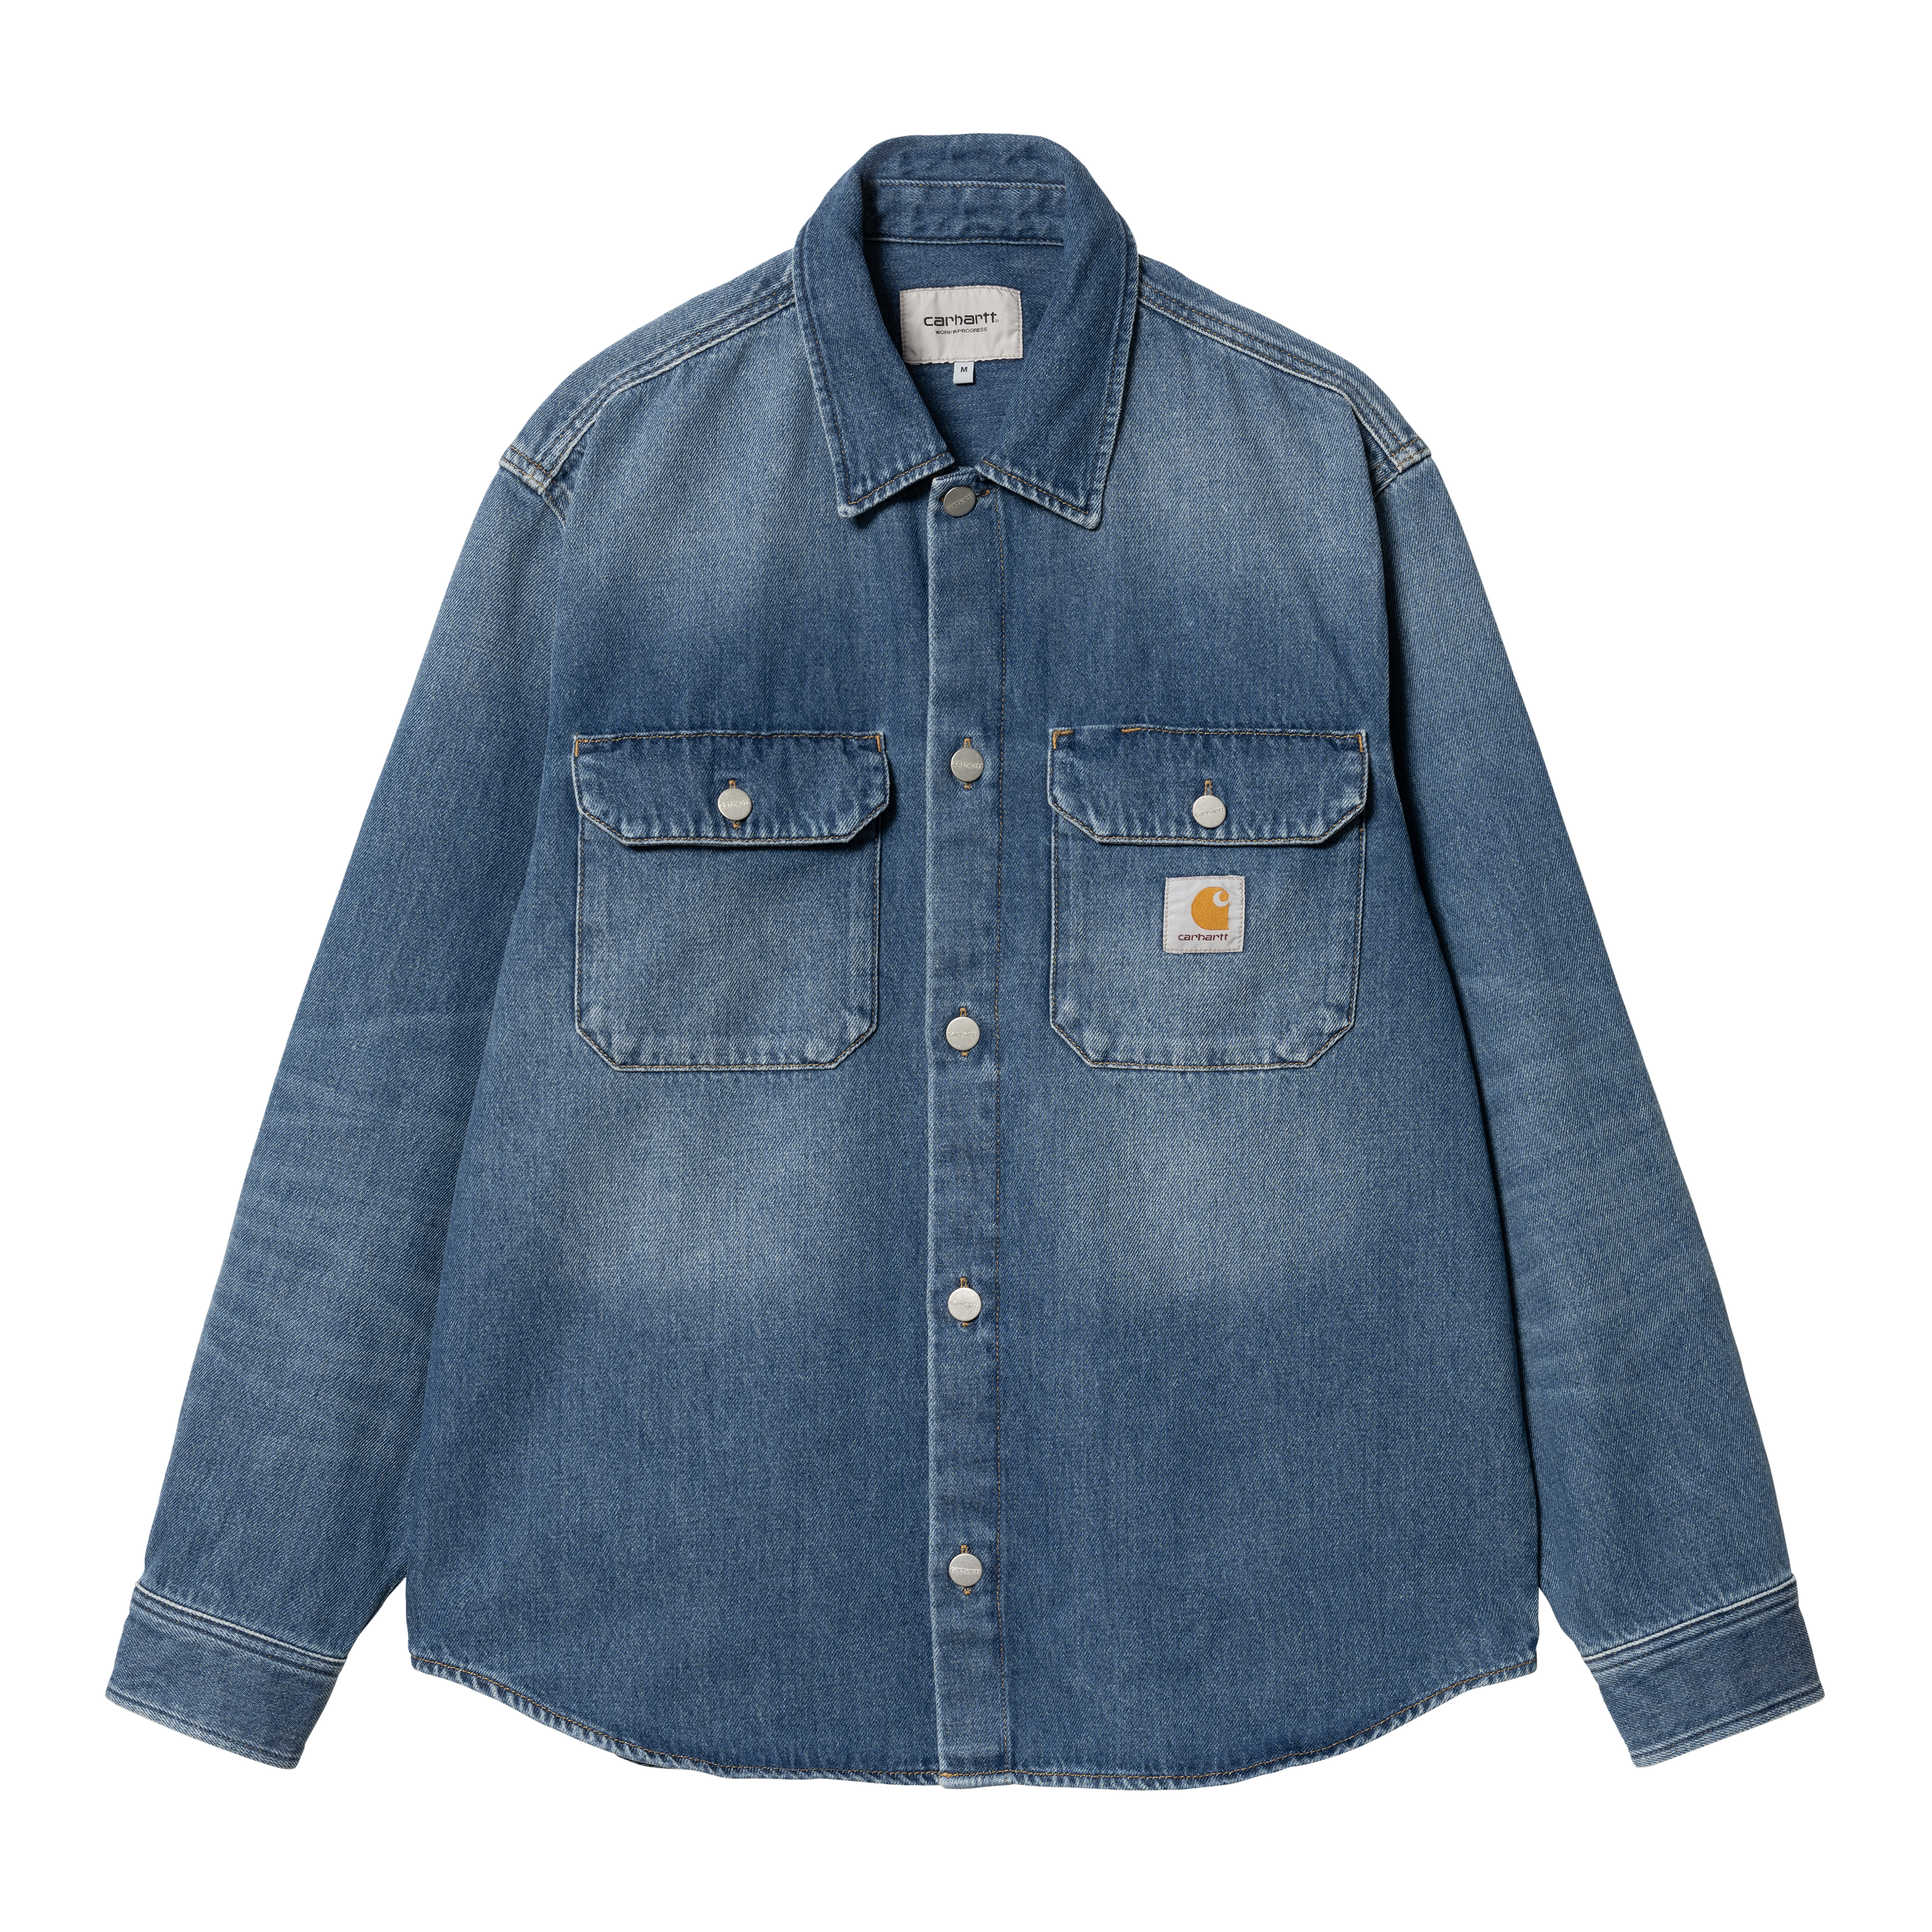 Carhartt Men's Regular Medium Realtree Xtra Cotton Shirt Jacket